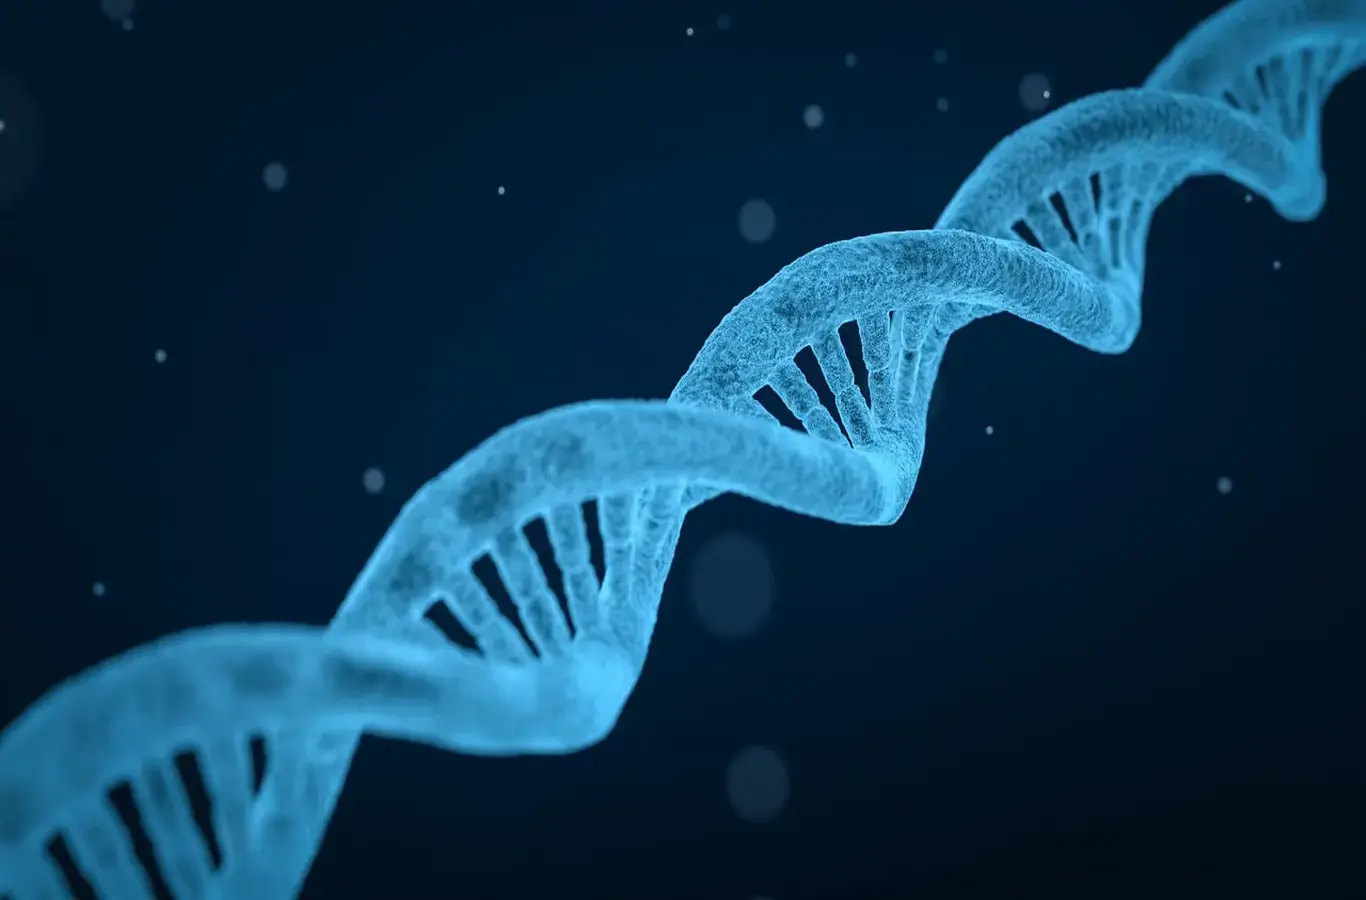 imagem que ilustra o DNA para o conteúdo sobre mapa mental engenharia genética